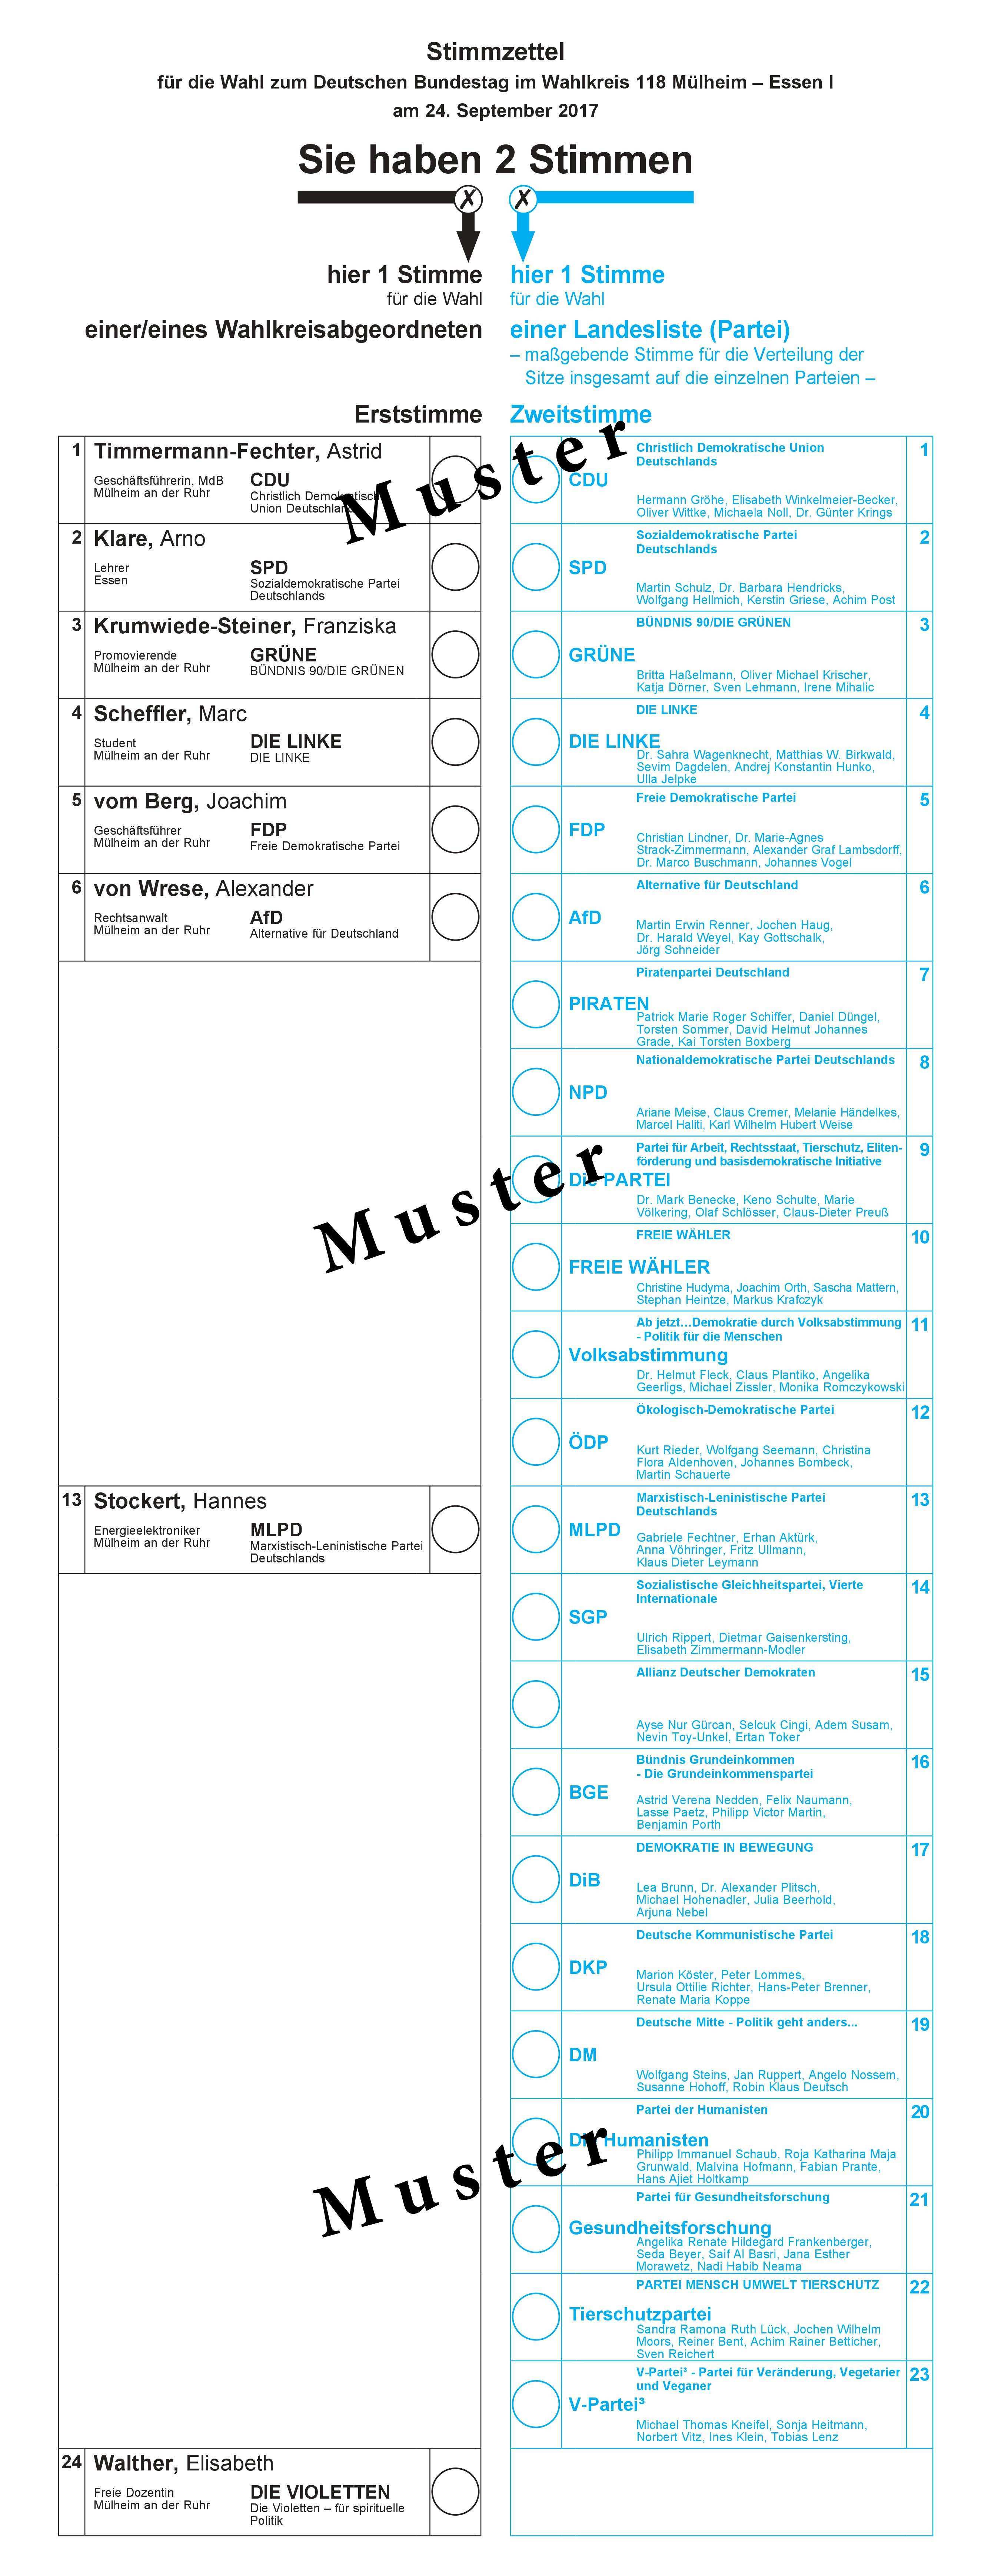 Datei Stimmzettel Bundestagswahl 2017 Wahlkreis 118 Jpg Wikipedia